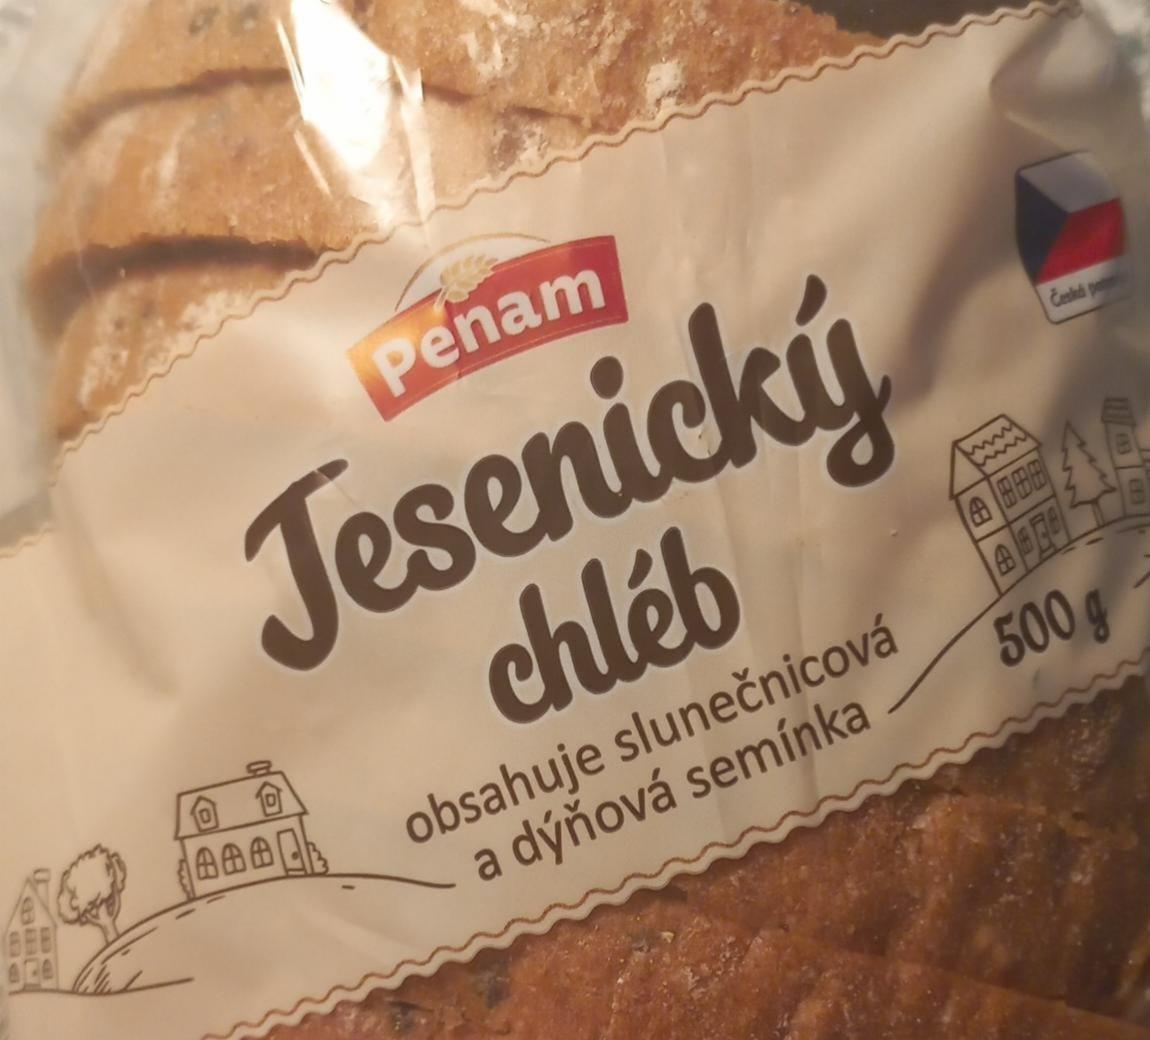 Fotografie - Jesenický chléb s žitným kvasem Penam